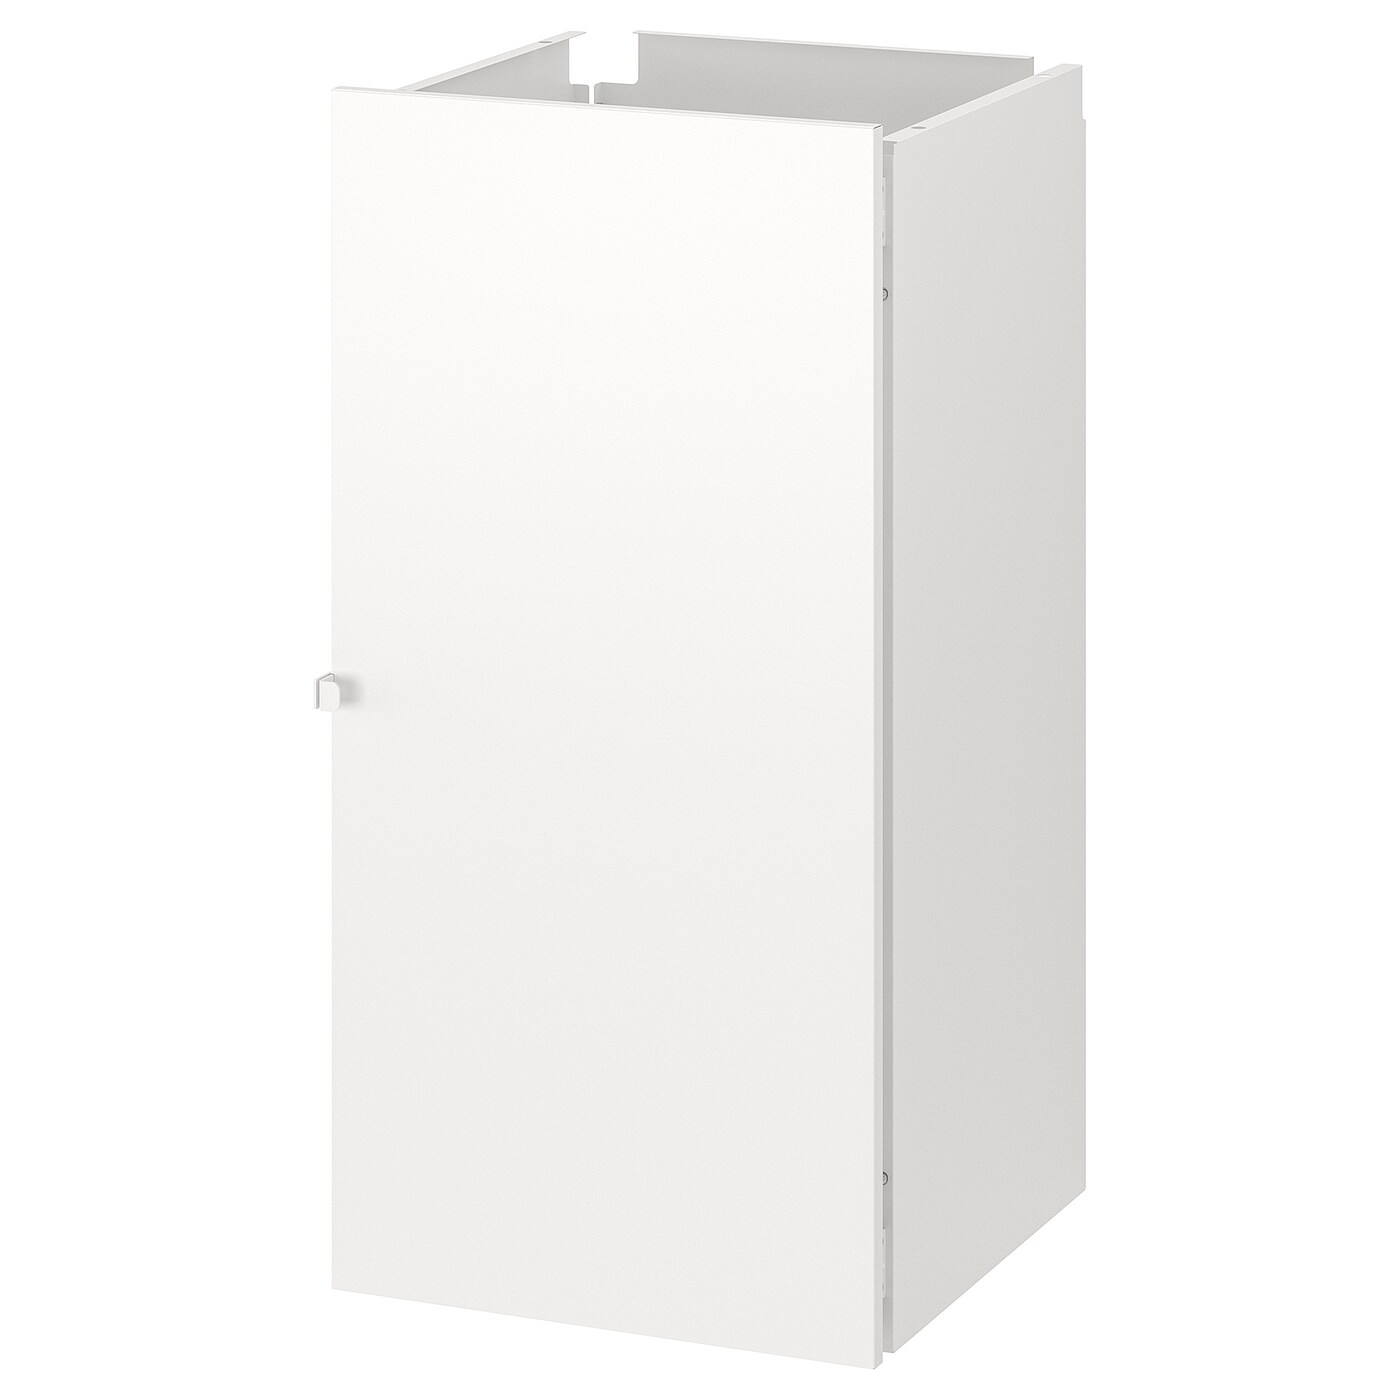 Комплект дверей и стенок для стеллажа - JOSTEIN IKEA/ЙОСТЕЙН  ИКЕА, 82х40 см, белый